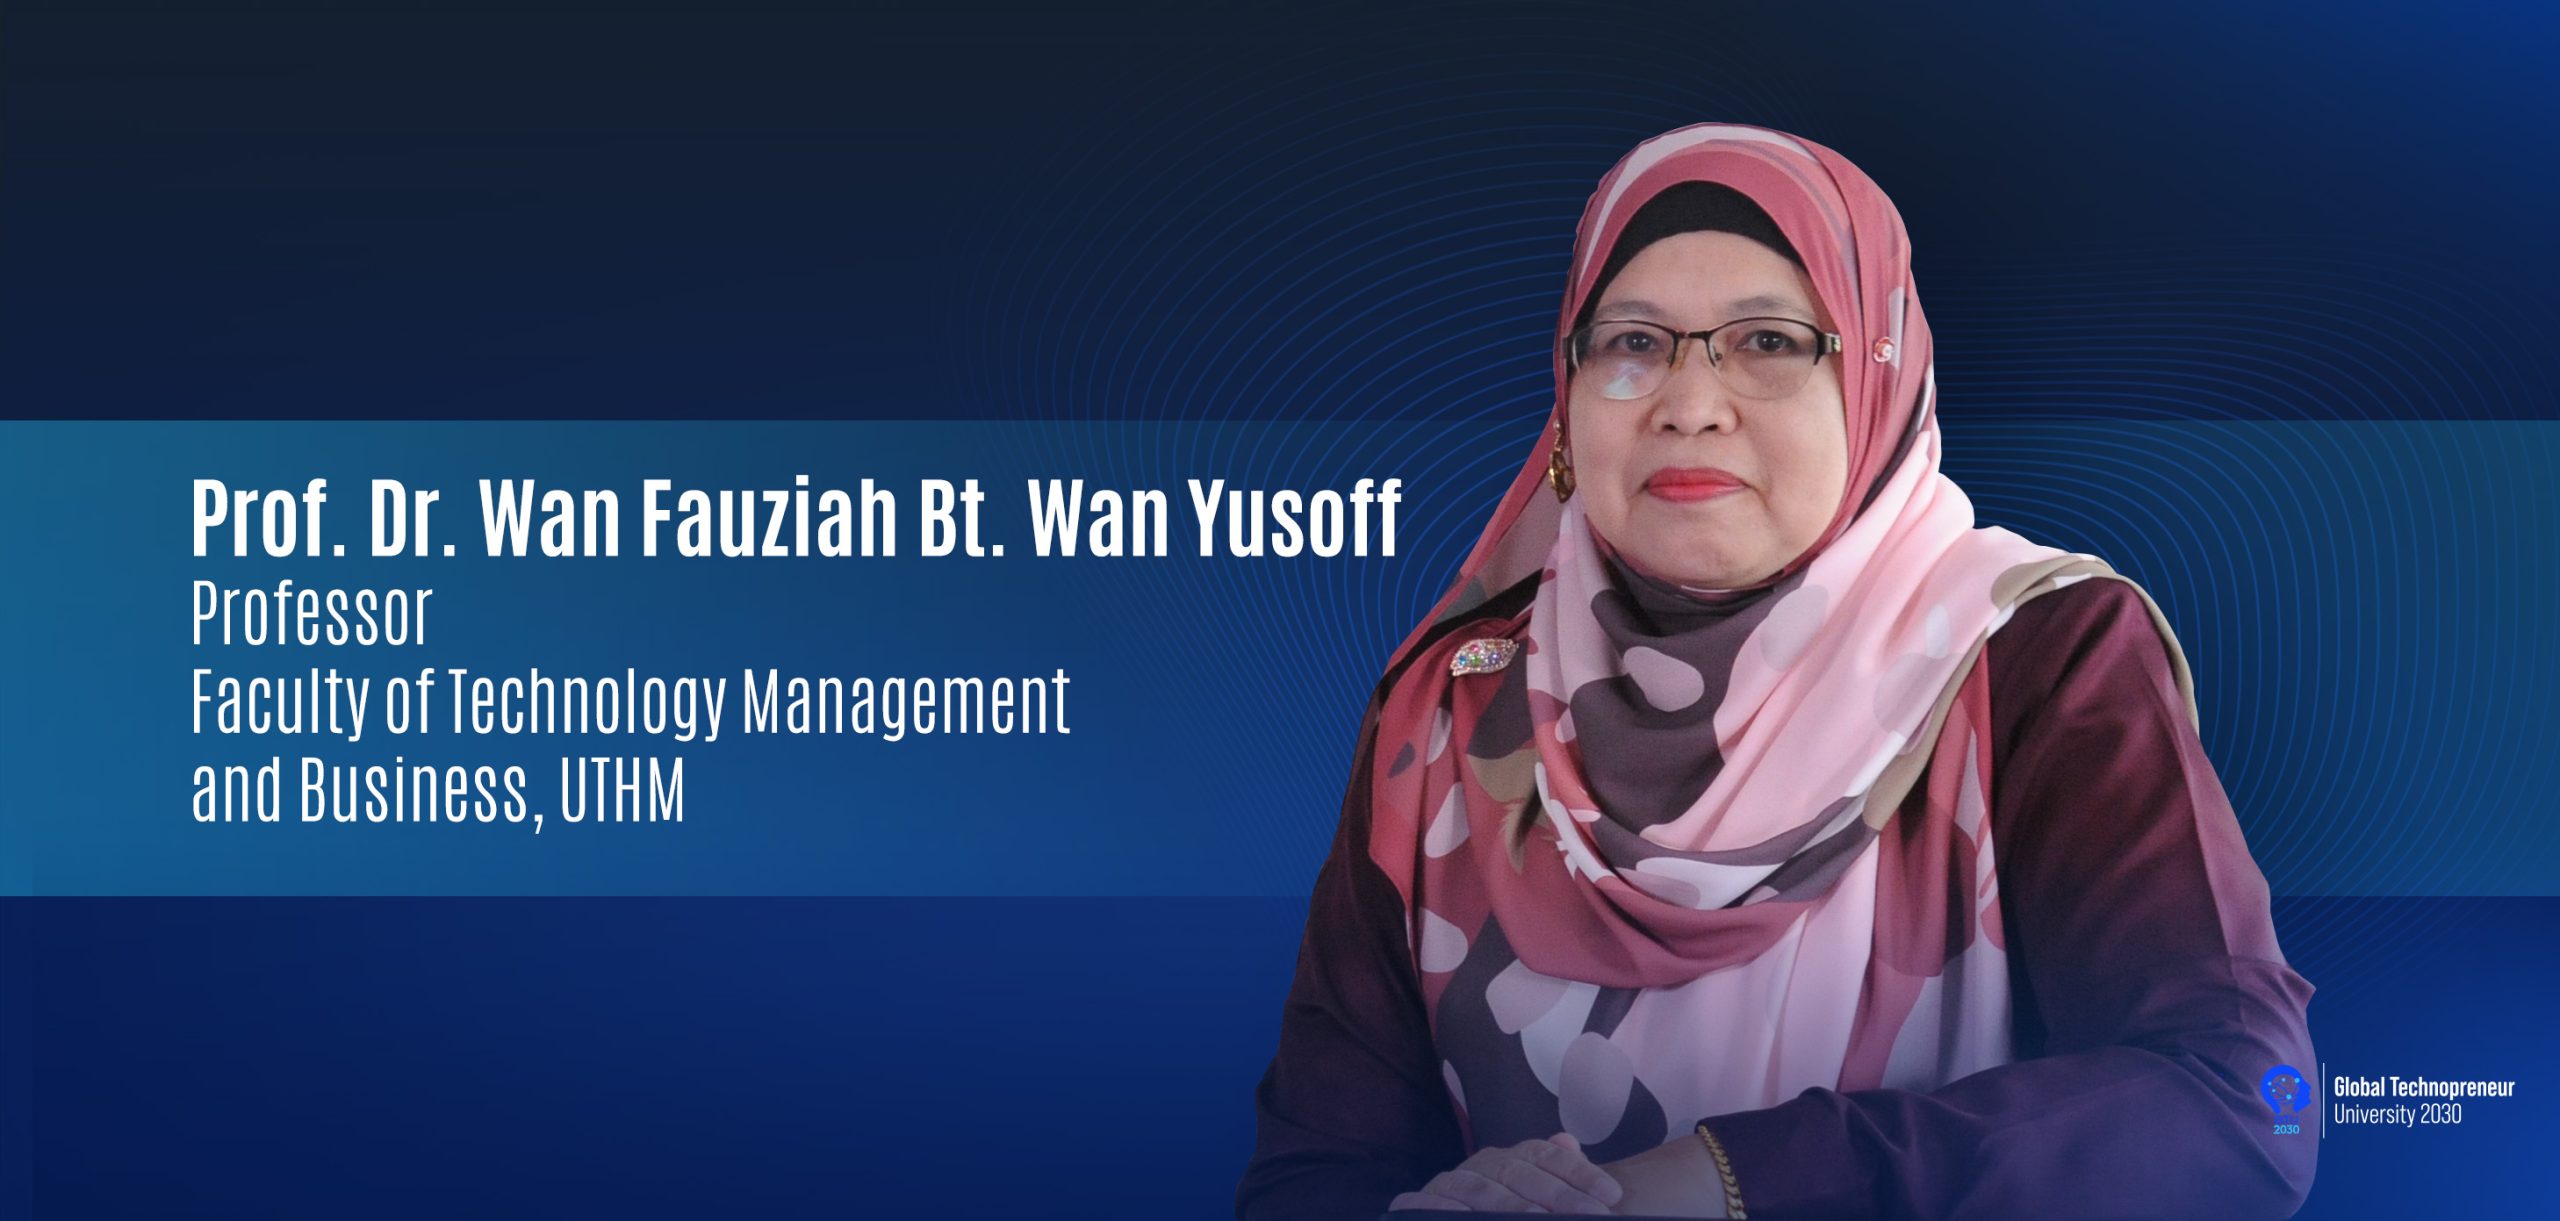 UTHM Expert: Professor Dr. Wan Fauziah Wan Yusoff